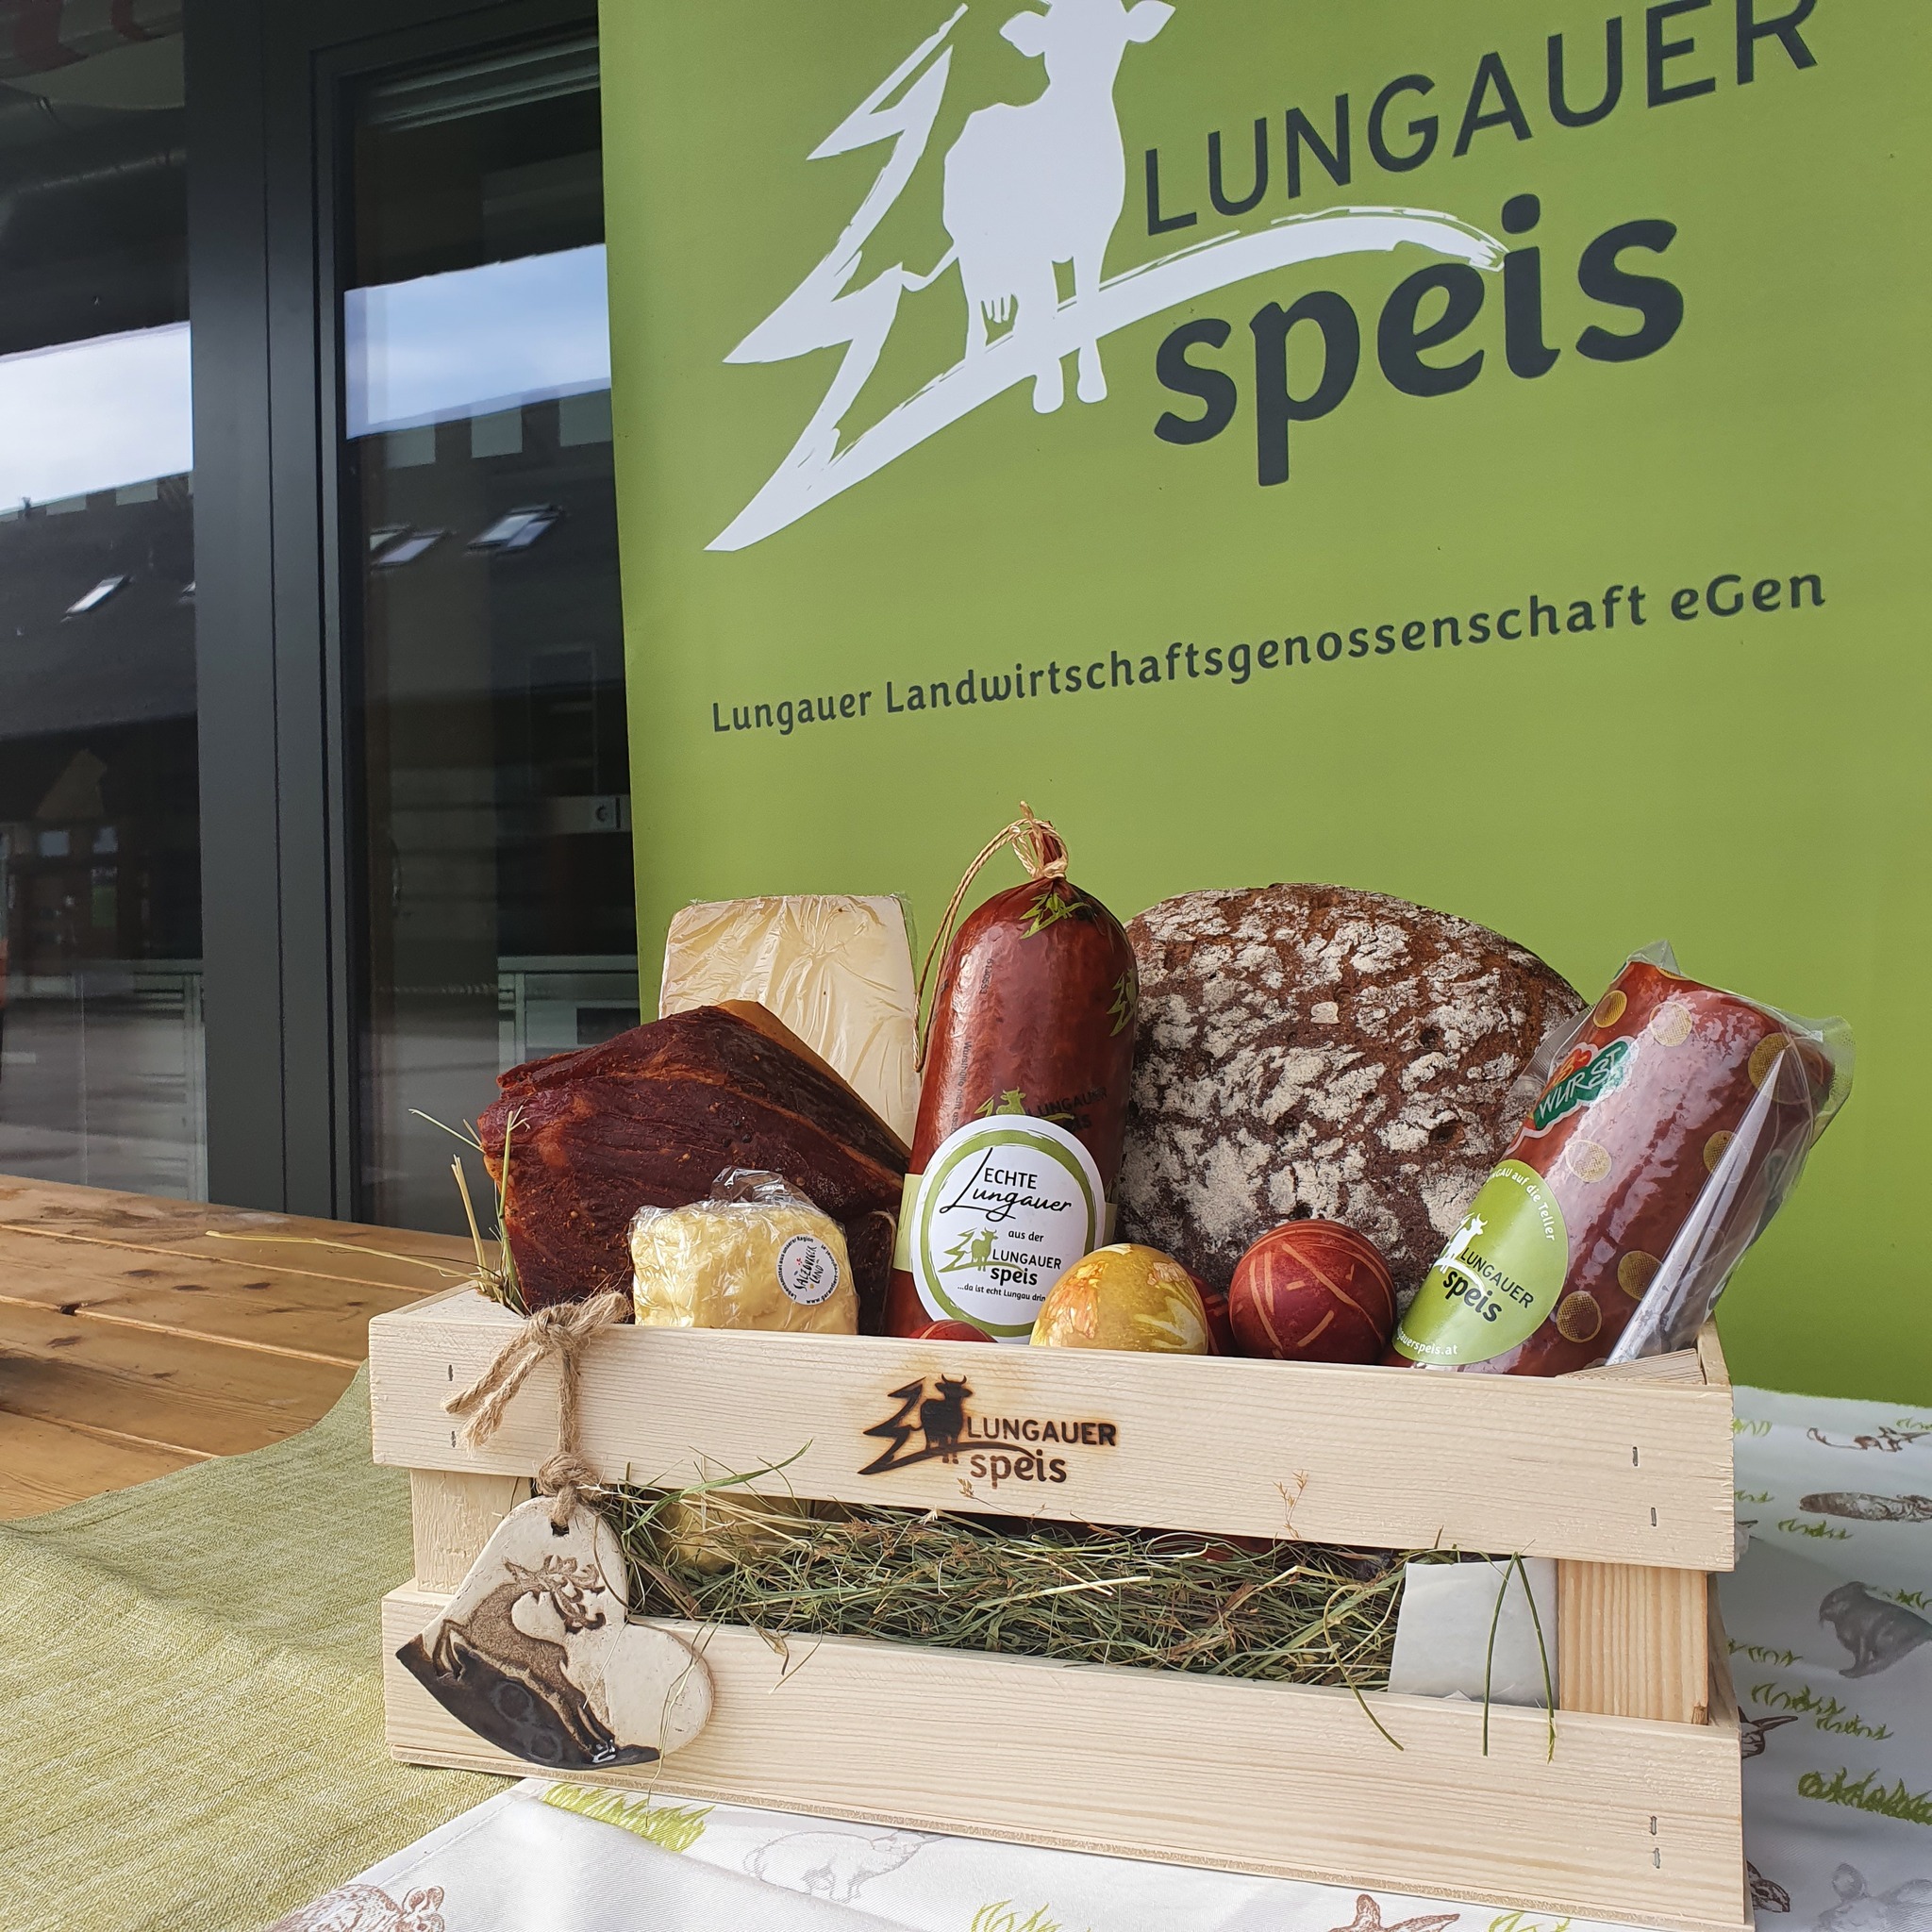 Lungauer Speis Hofladen bei Salzburg schmeckt